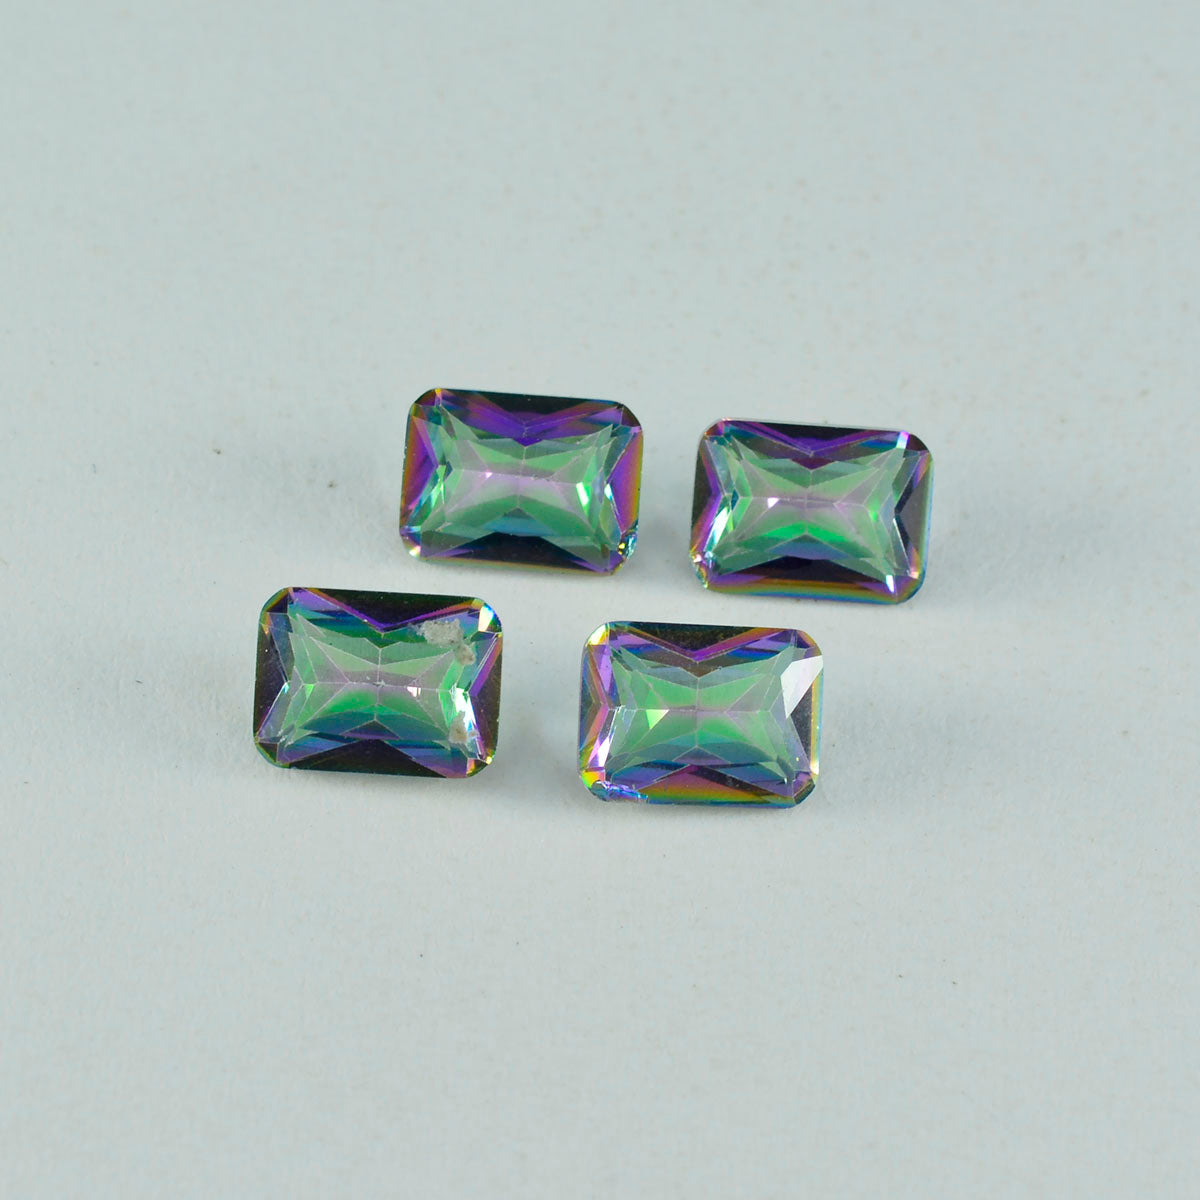 riyogems 1 шт., разноцветный мистический кварц, граненый восьмиугольной формы 7x9 мм, прекрасное качество, свободный драгоценный камень